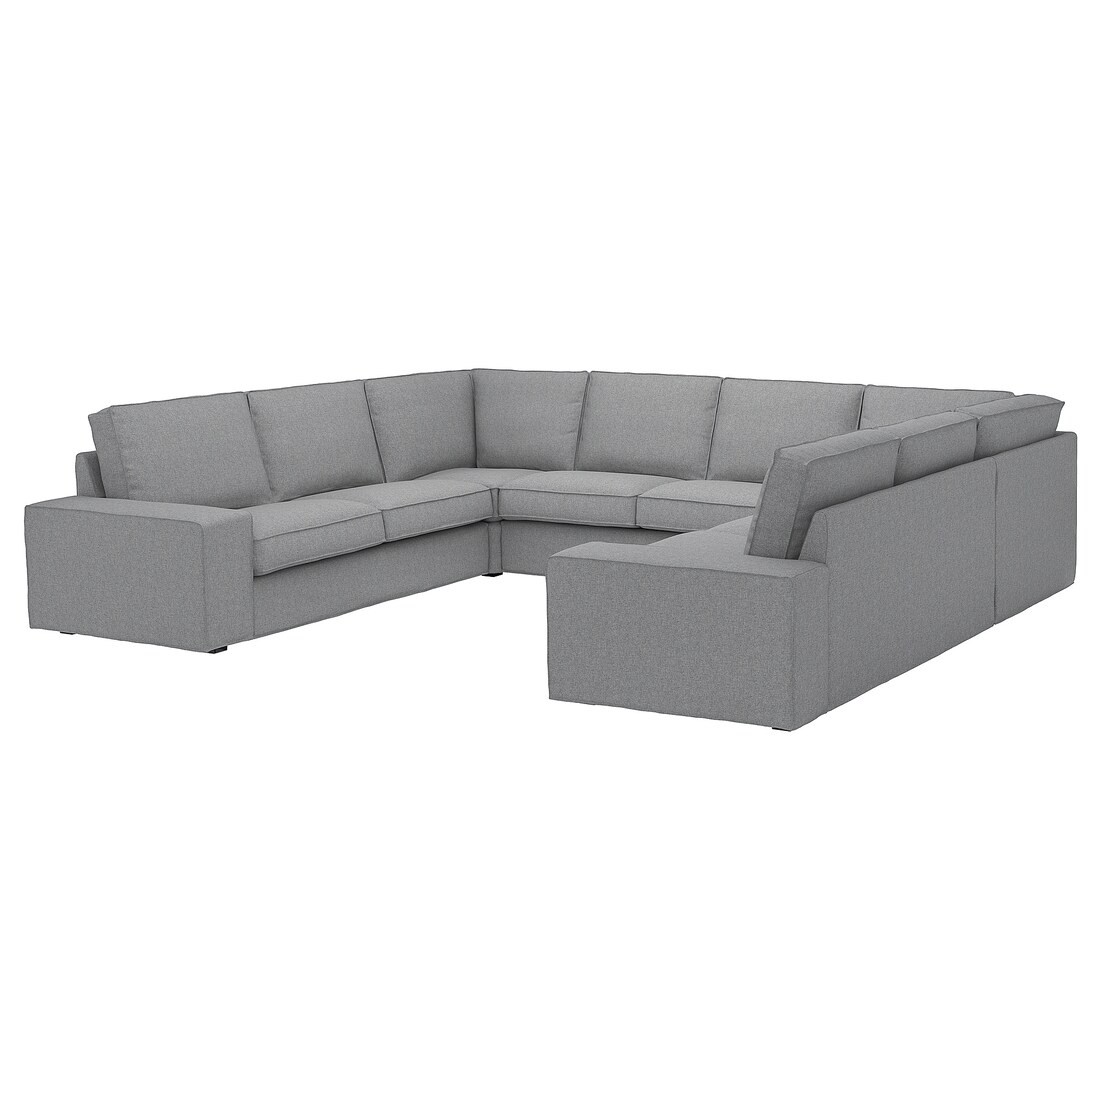 KIVIK КІВІК П-подібний диван, 6-місний, Tibbleby бежевий / сірий